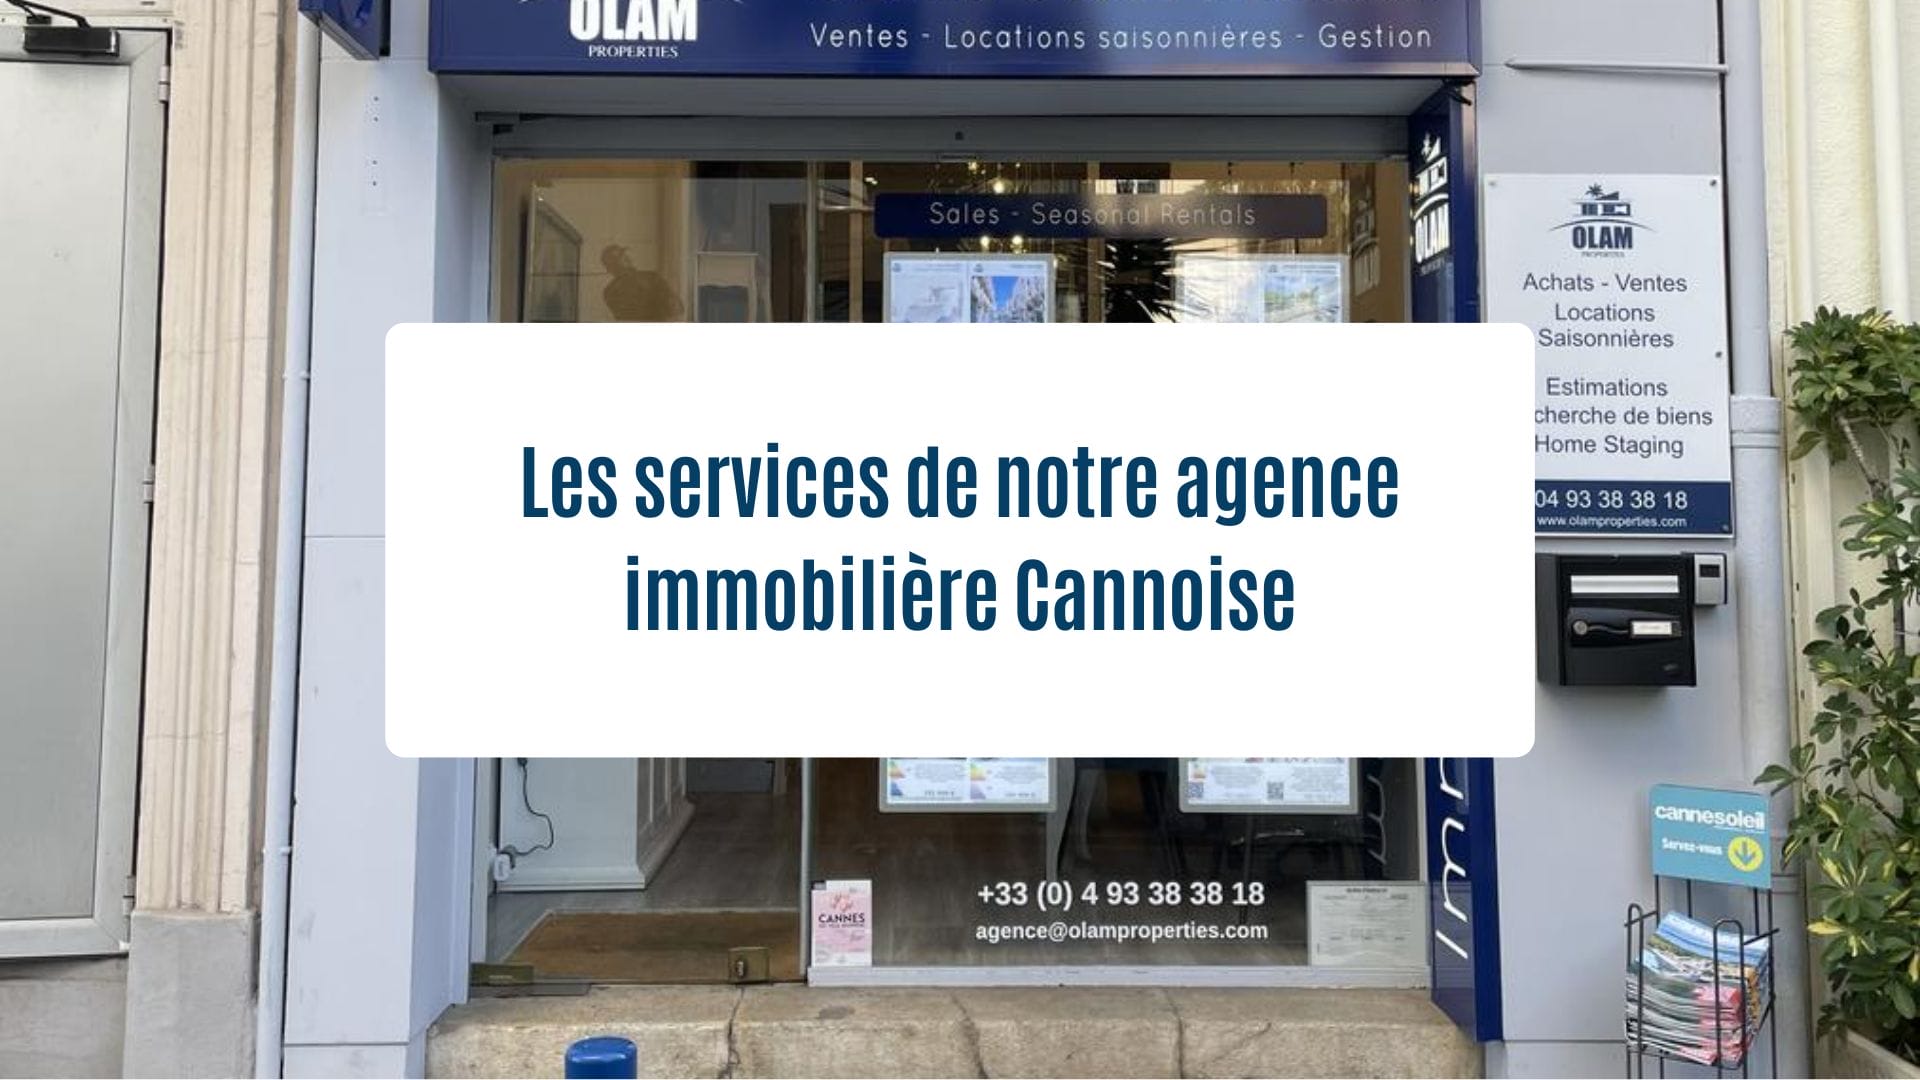 Actualités Olam Properties : Les services de notre agence immobilière Cannoise